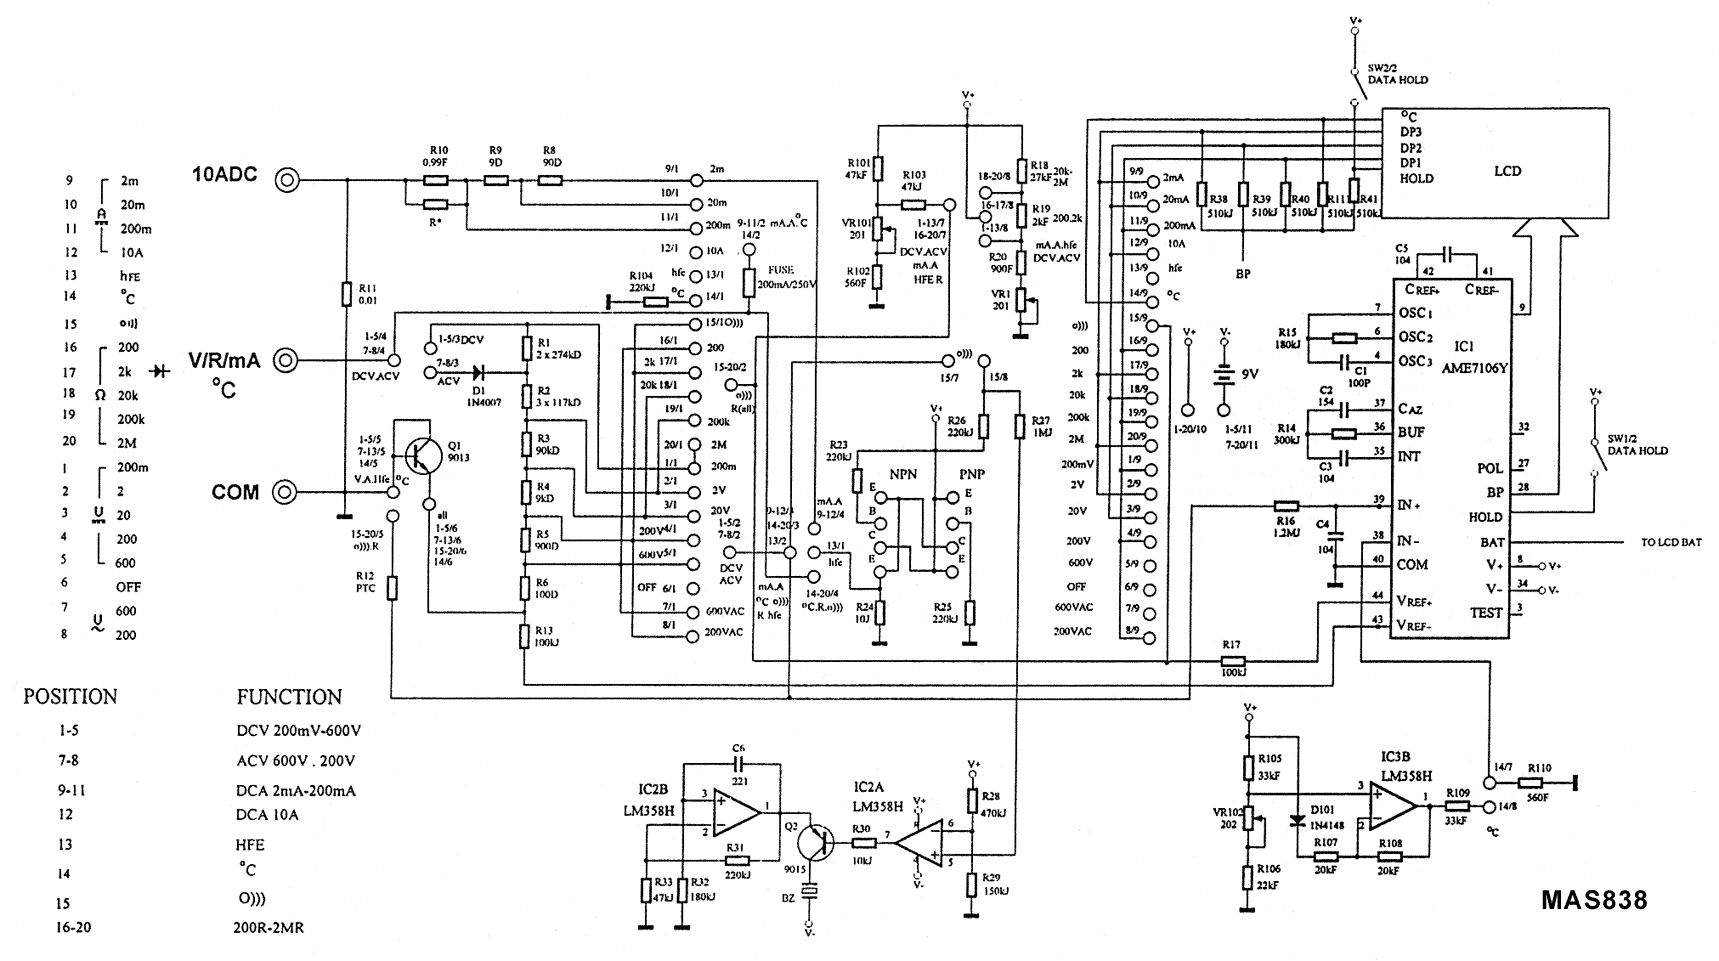 Mastech 838 Multimeter schematics